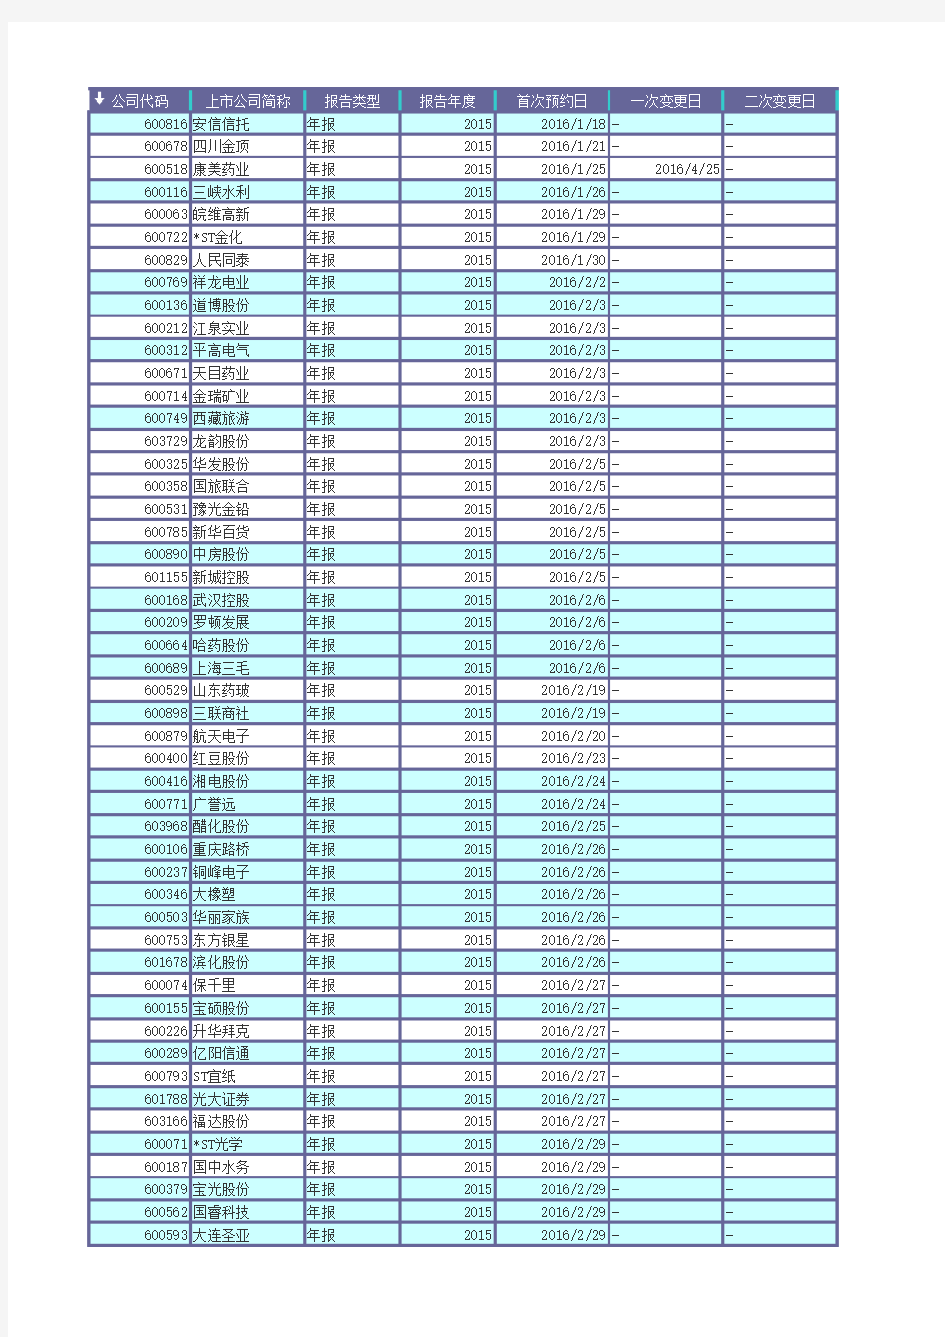 上证所2015-2016年年报时间表